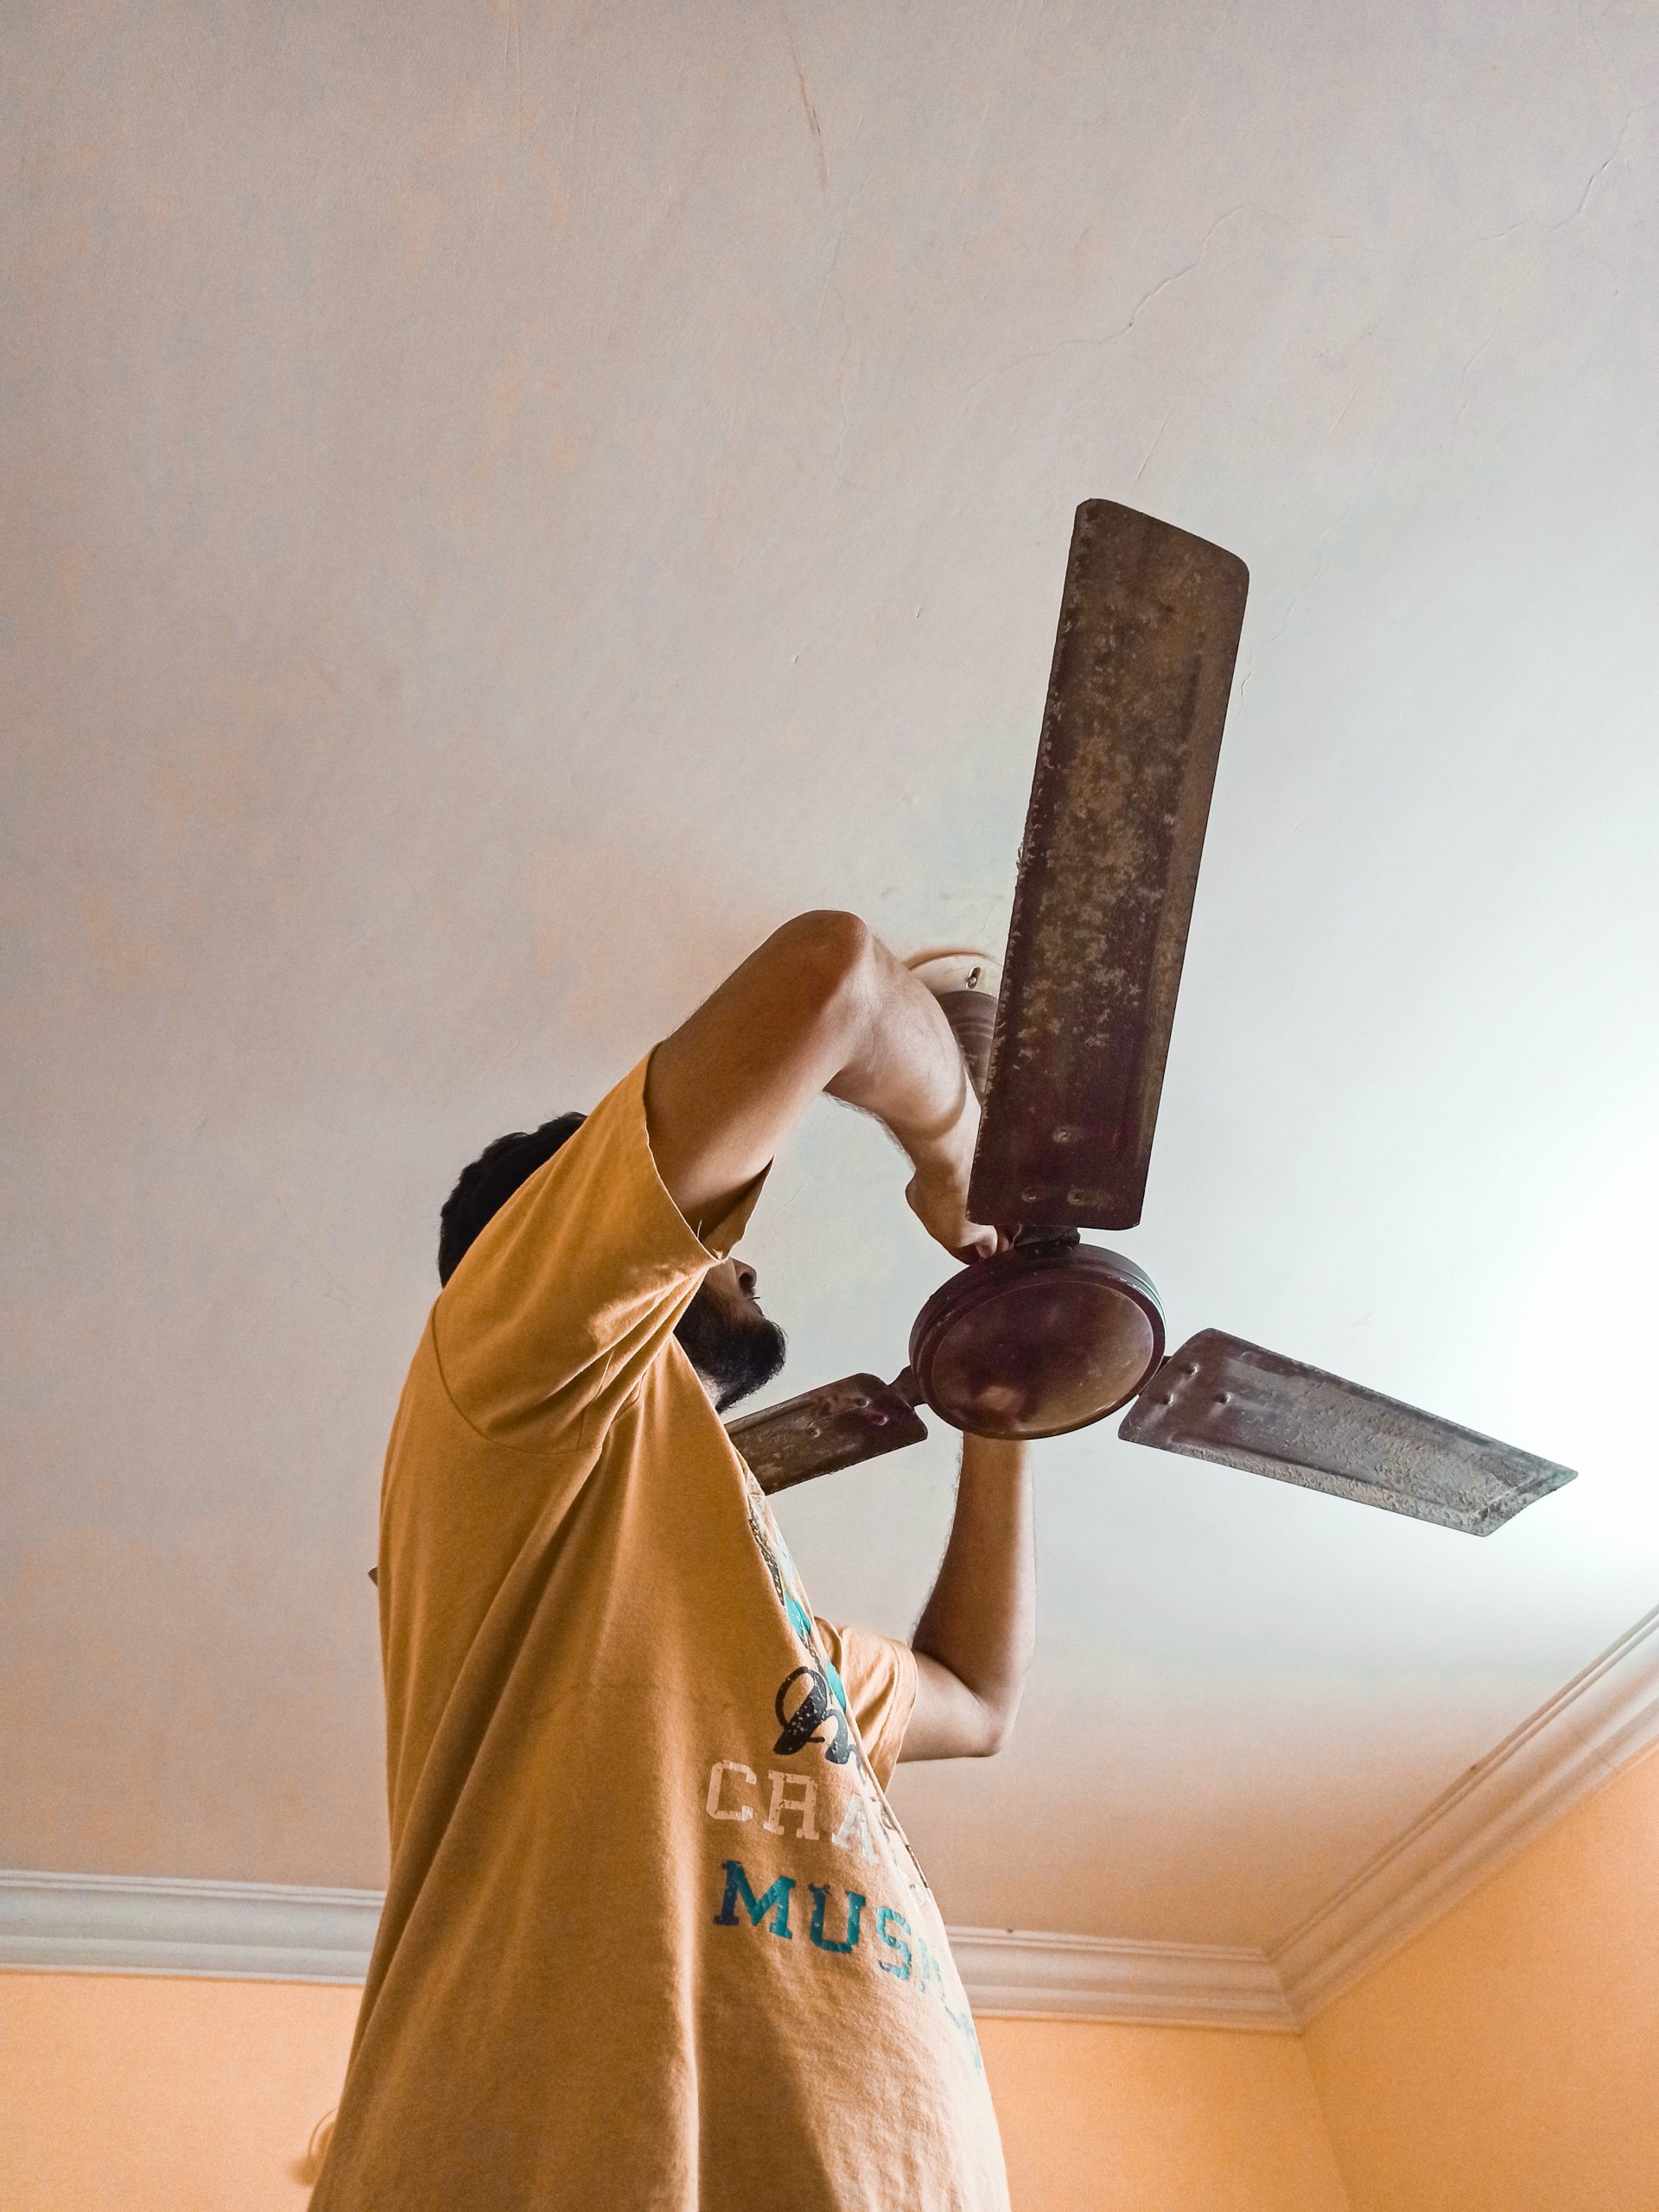 An electrician repairing ceiling fan